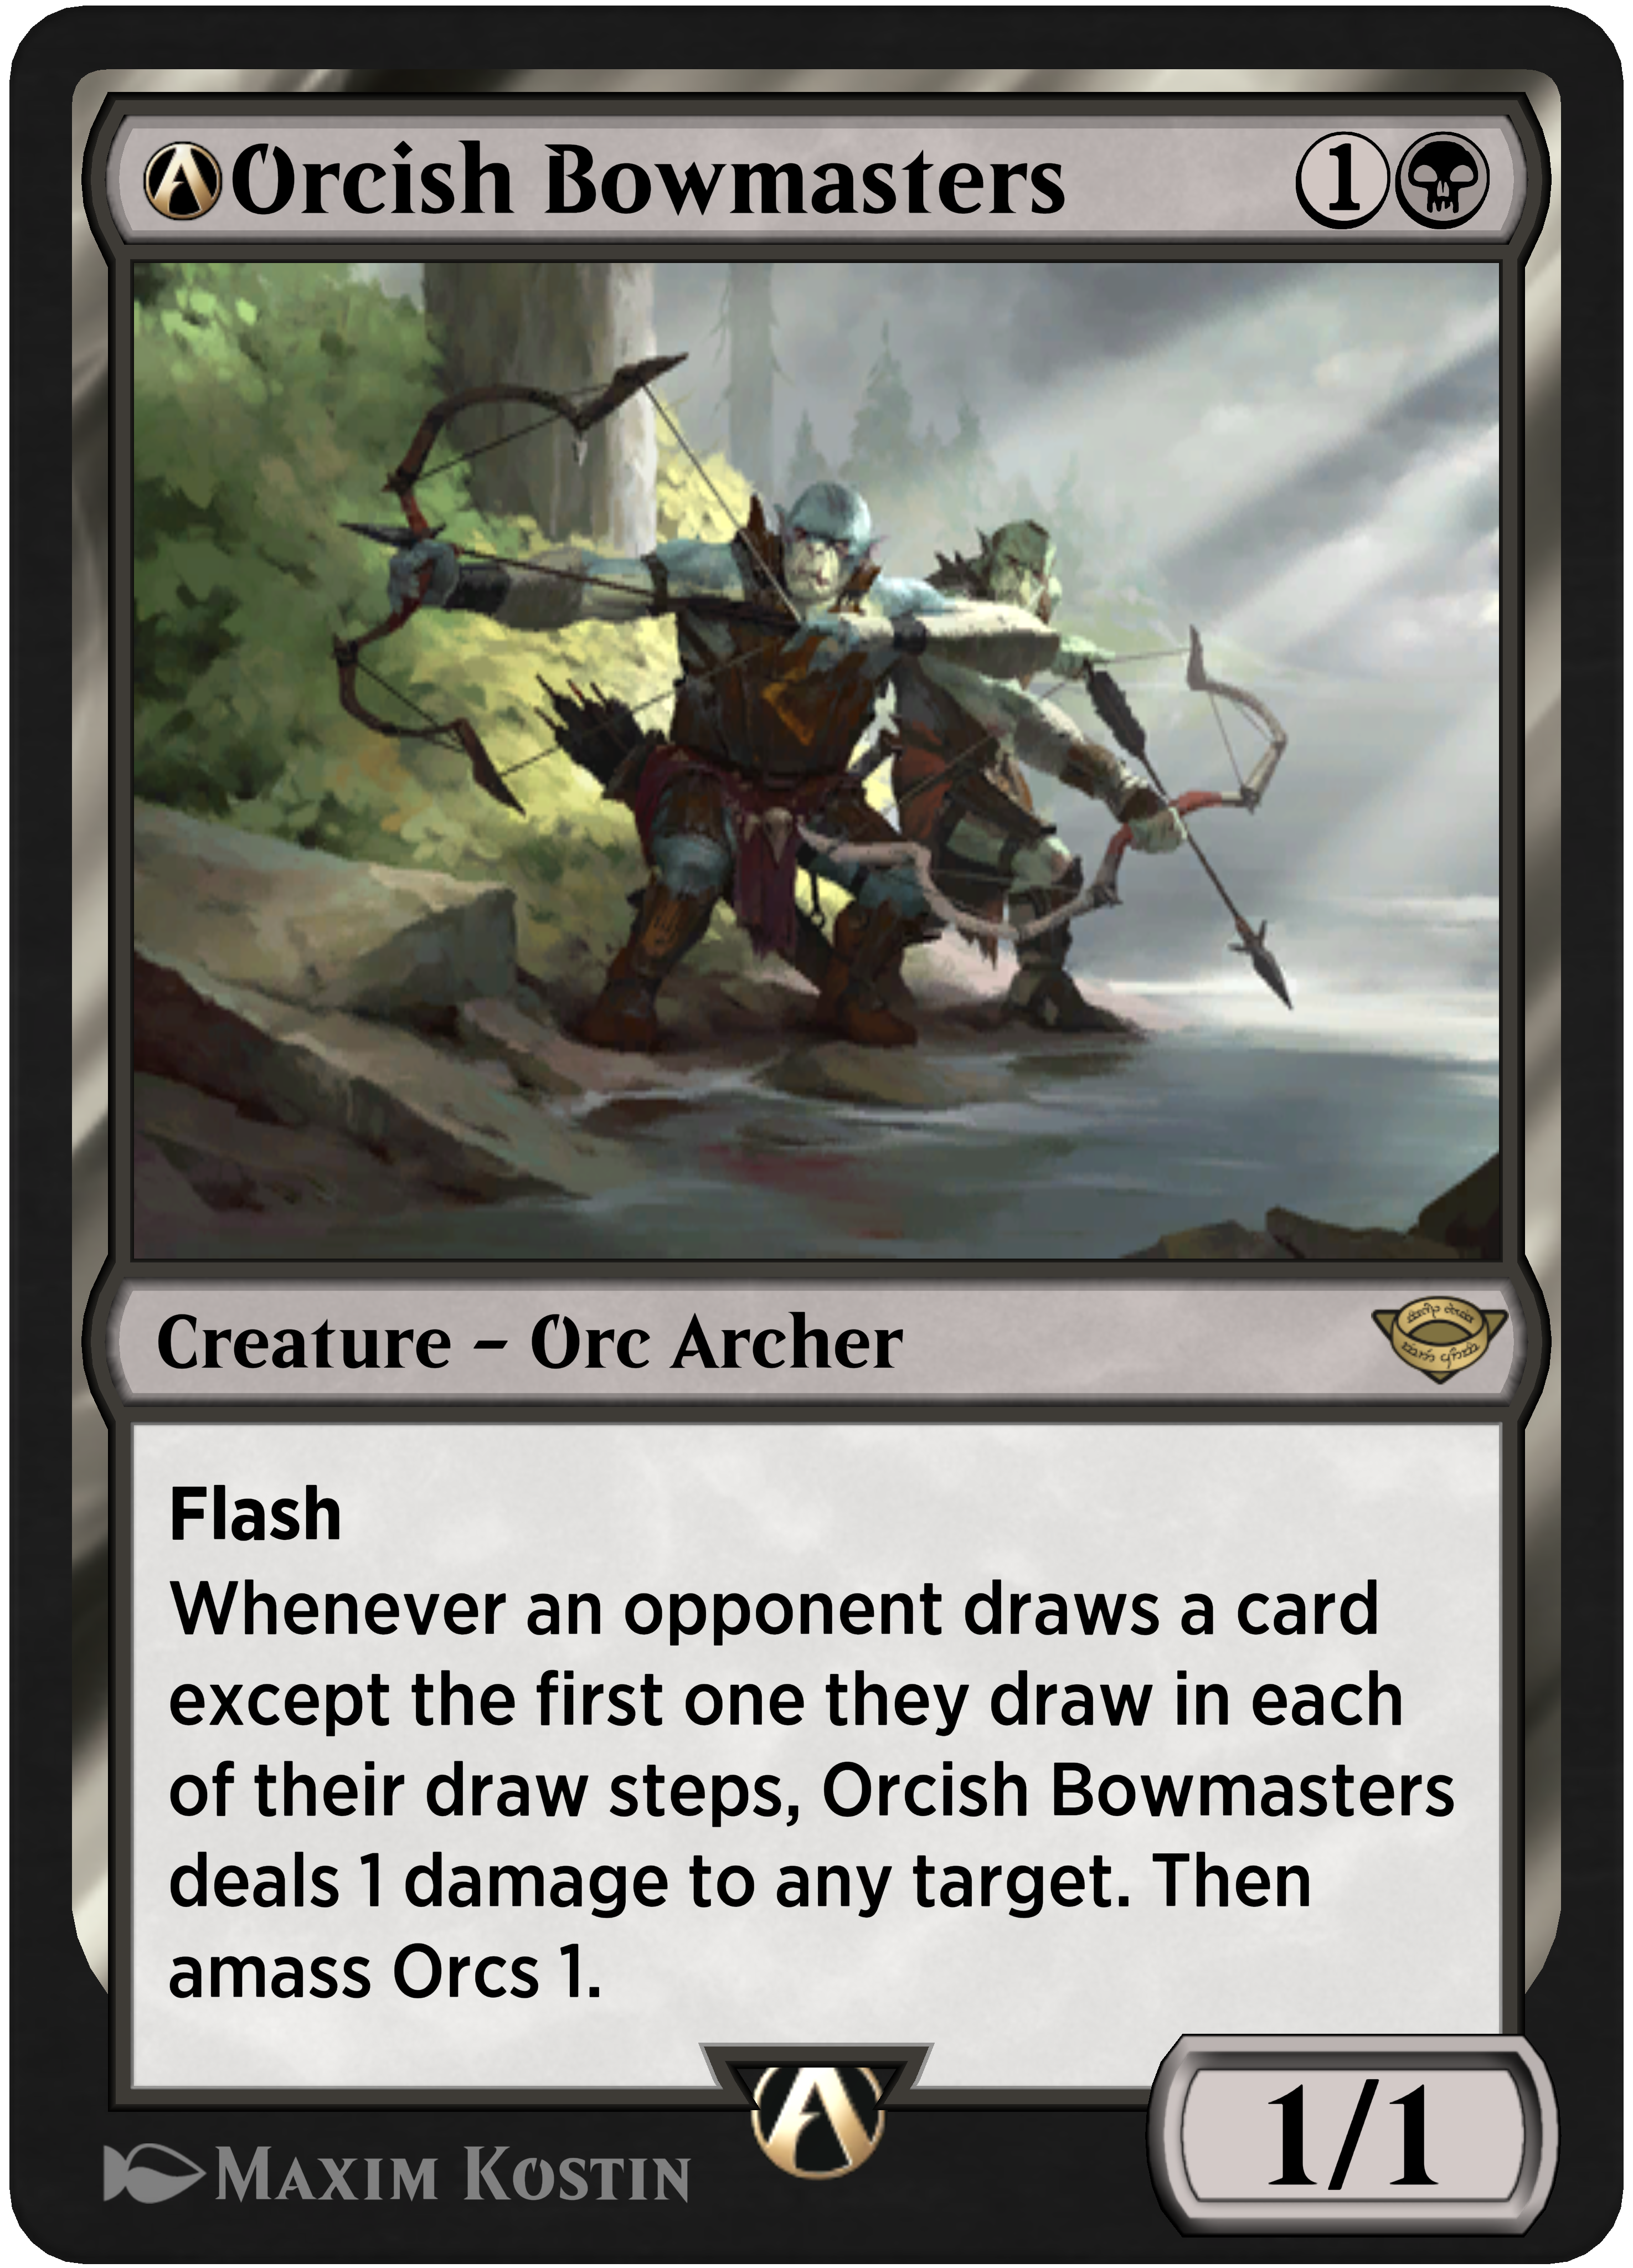 Rebalanced Orcish Bowmasters